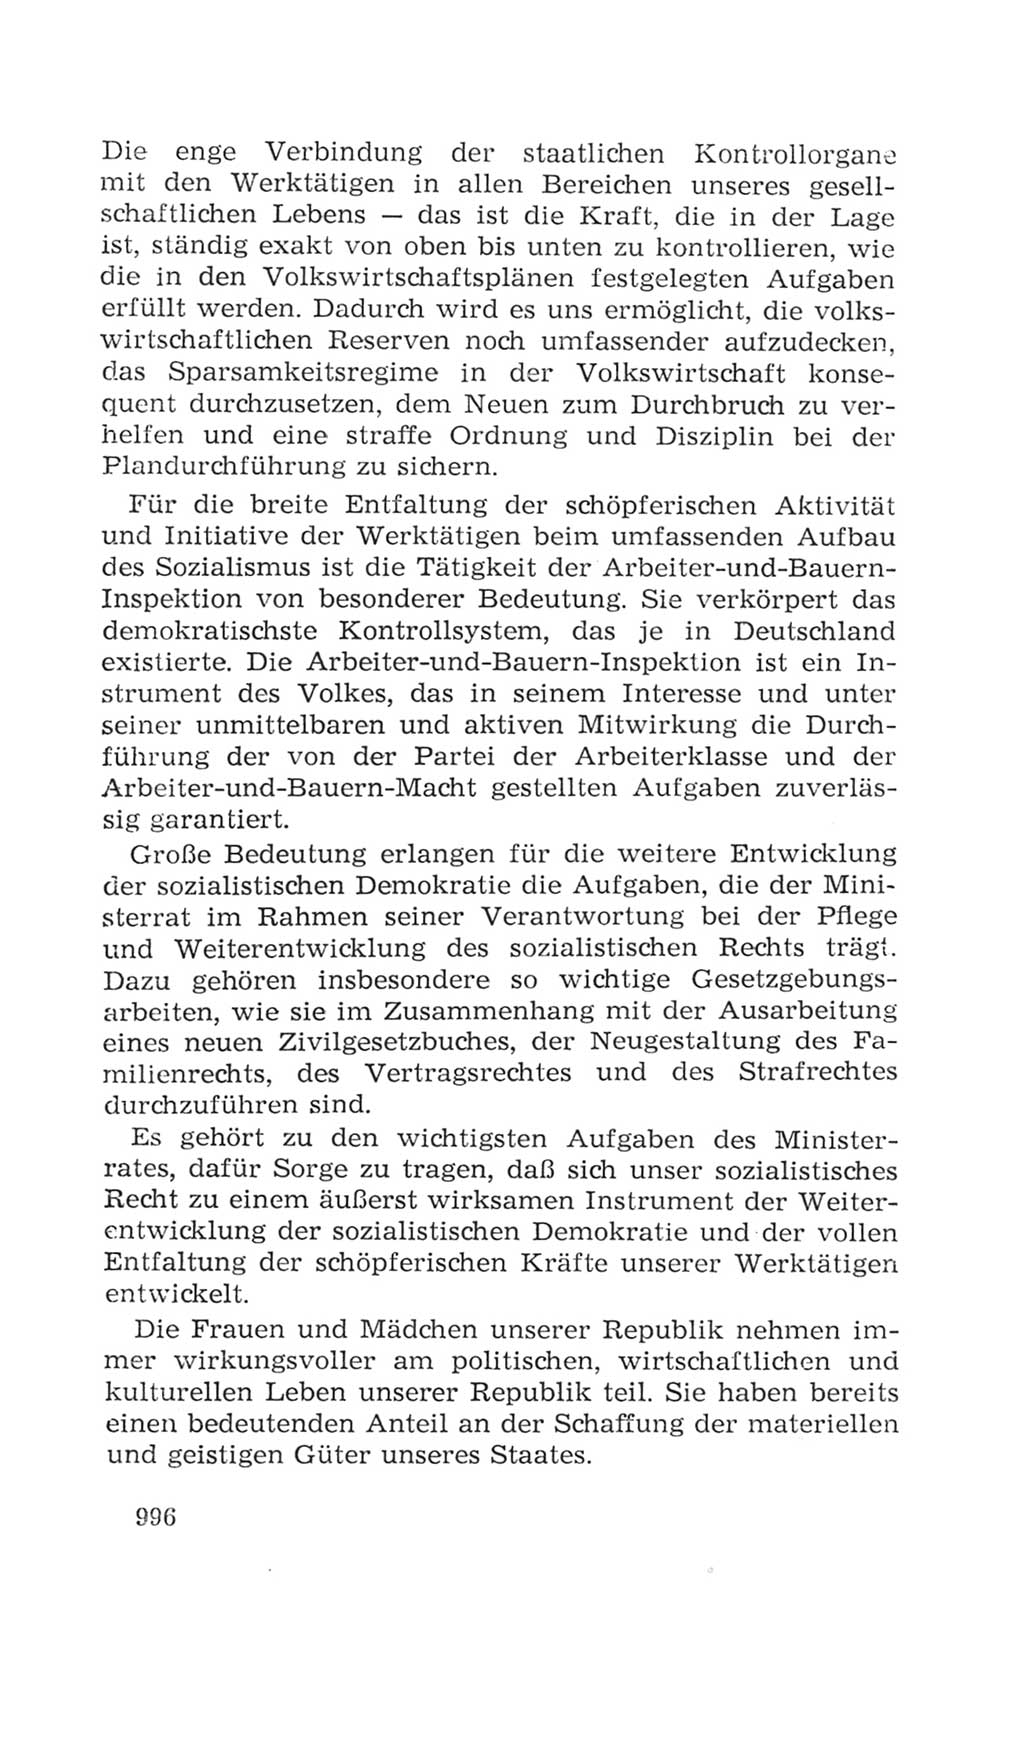 Volkskammer (VK) der Deutschen Demokratischen Republik (DDR), 4. Wahlperiode 1963-1967, Seite 996 (VK. DDR 4. WP. 1963-1967, S. 996)